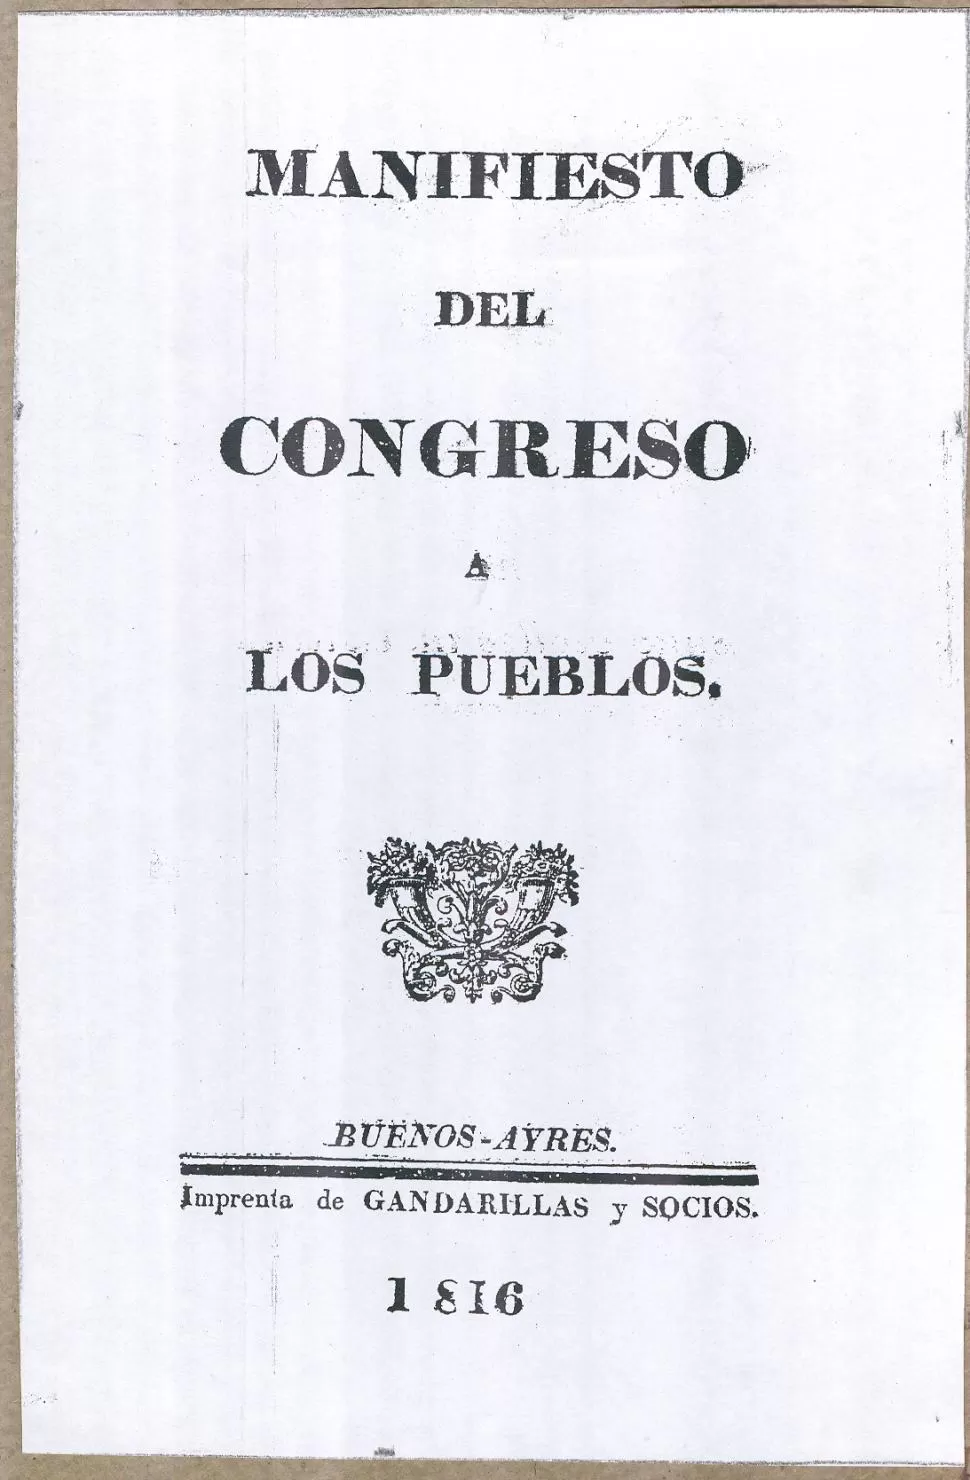 PORTADA. Una de las ediciones en folleto, en las cuales se difundió el “Manifiesto del Congreso a los Pueblos” la gaceta / archivo